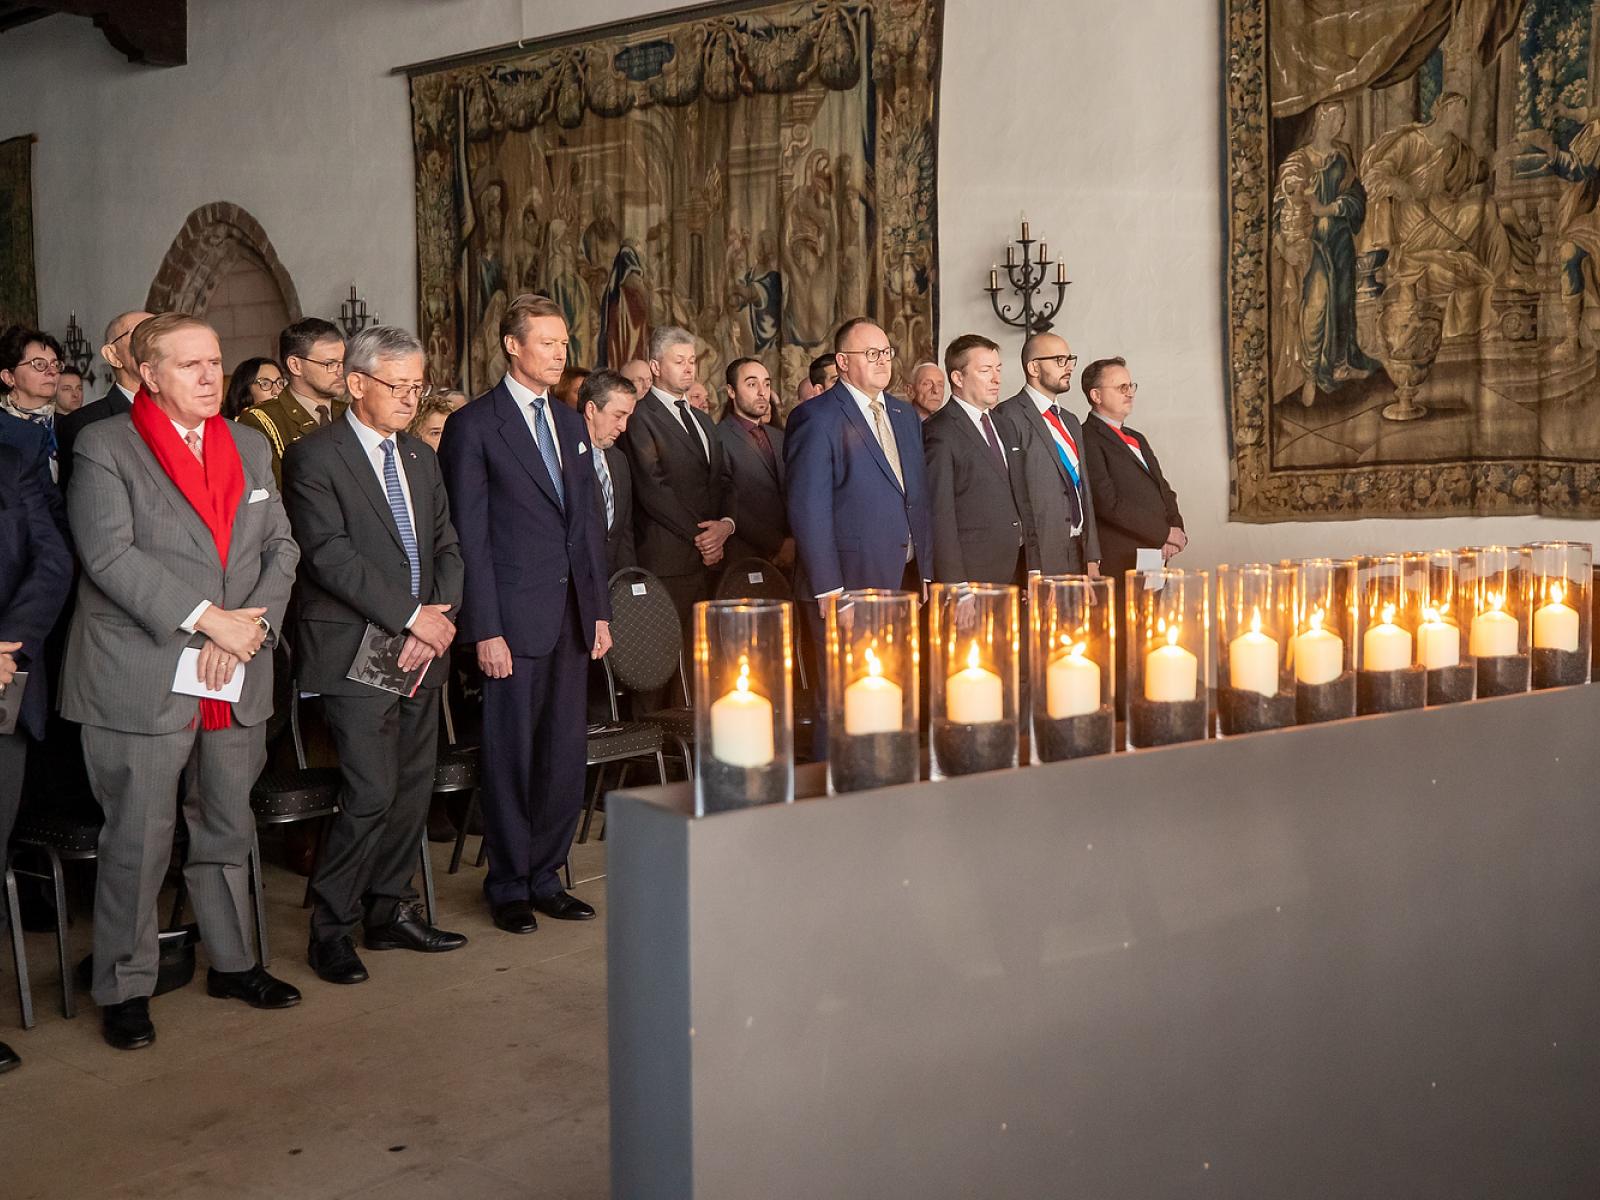 Le Grand-Duc a assisté à la commémoration du 75e anniversaire de la libération de Vianden